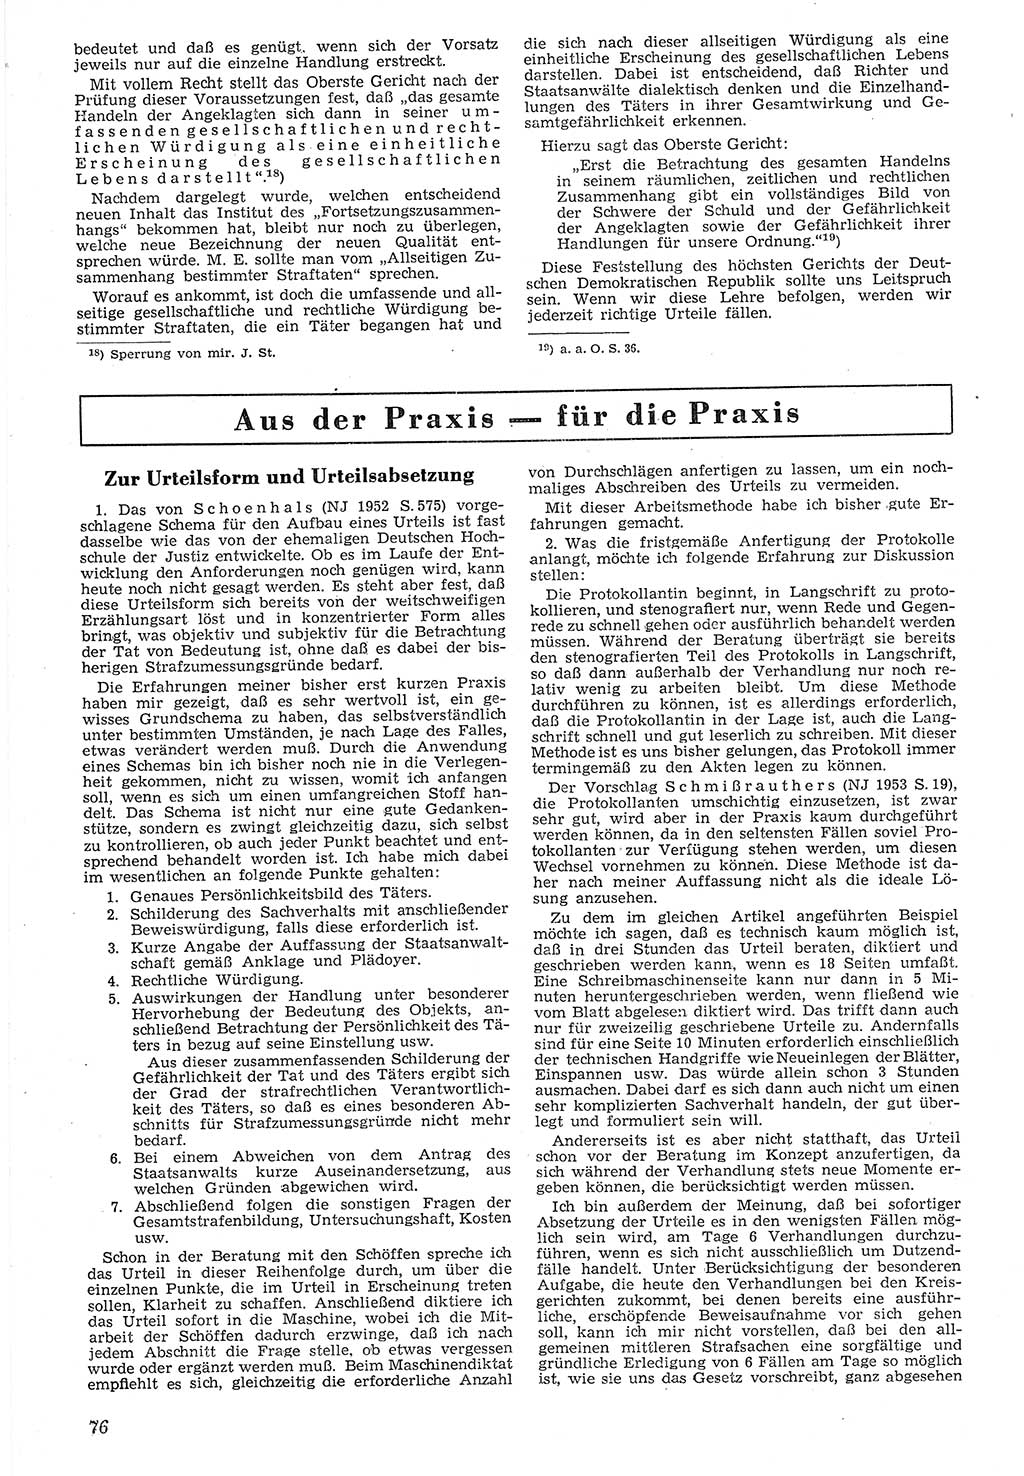 Neue Justiz (NJ), Zeitschrift für Recht und Rechtswissenschaft [Deutsche Demokratische Republik (DDR)], 7. Jahrgang 1953, Seite 76 (NJ DDR 1953, S. 76)